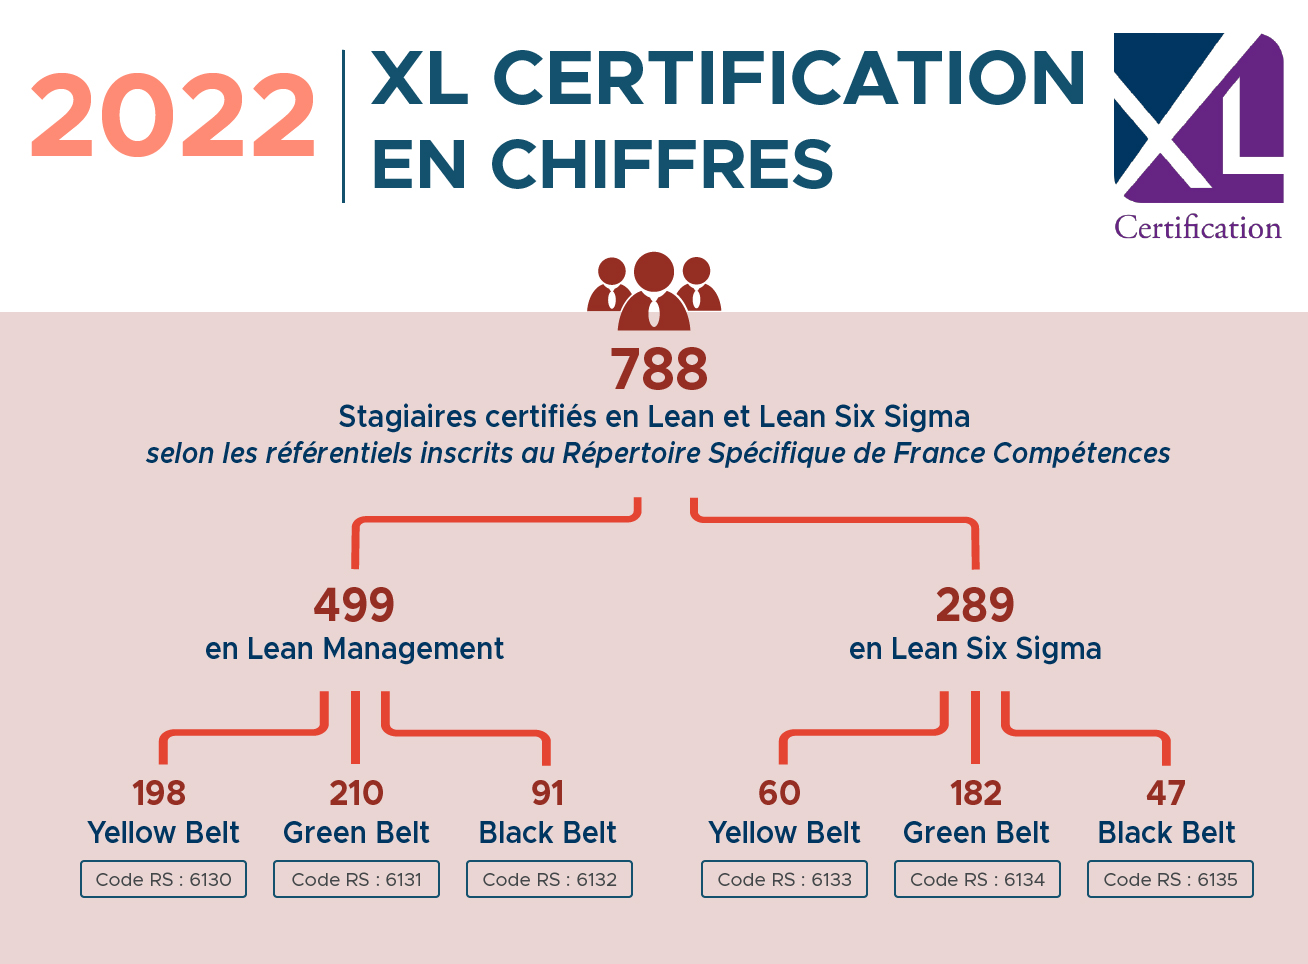 XL Certification en chiffres